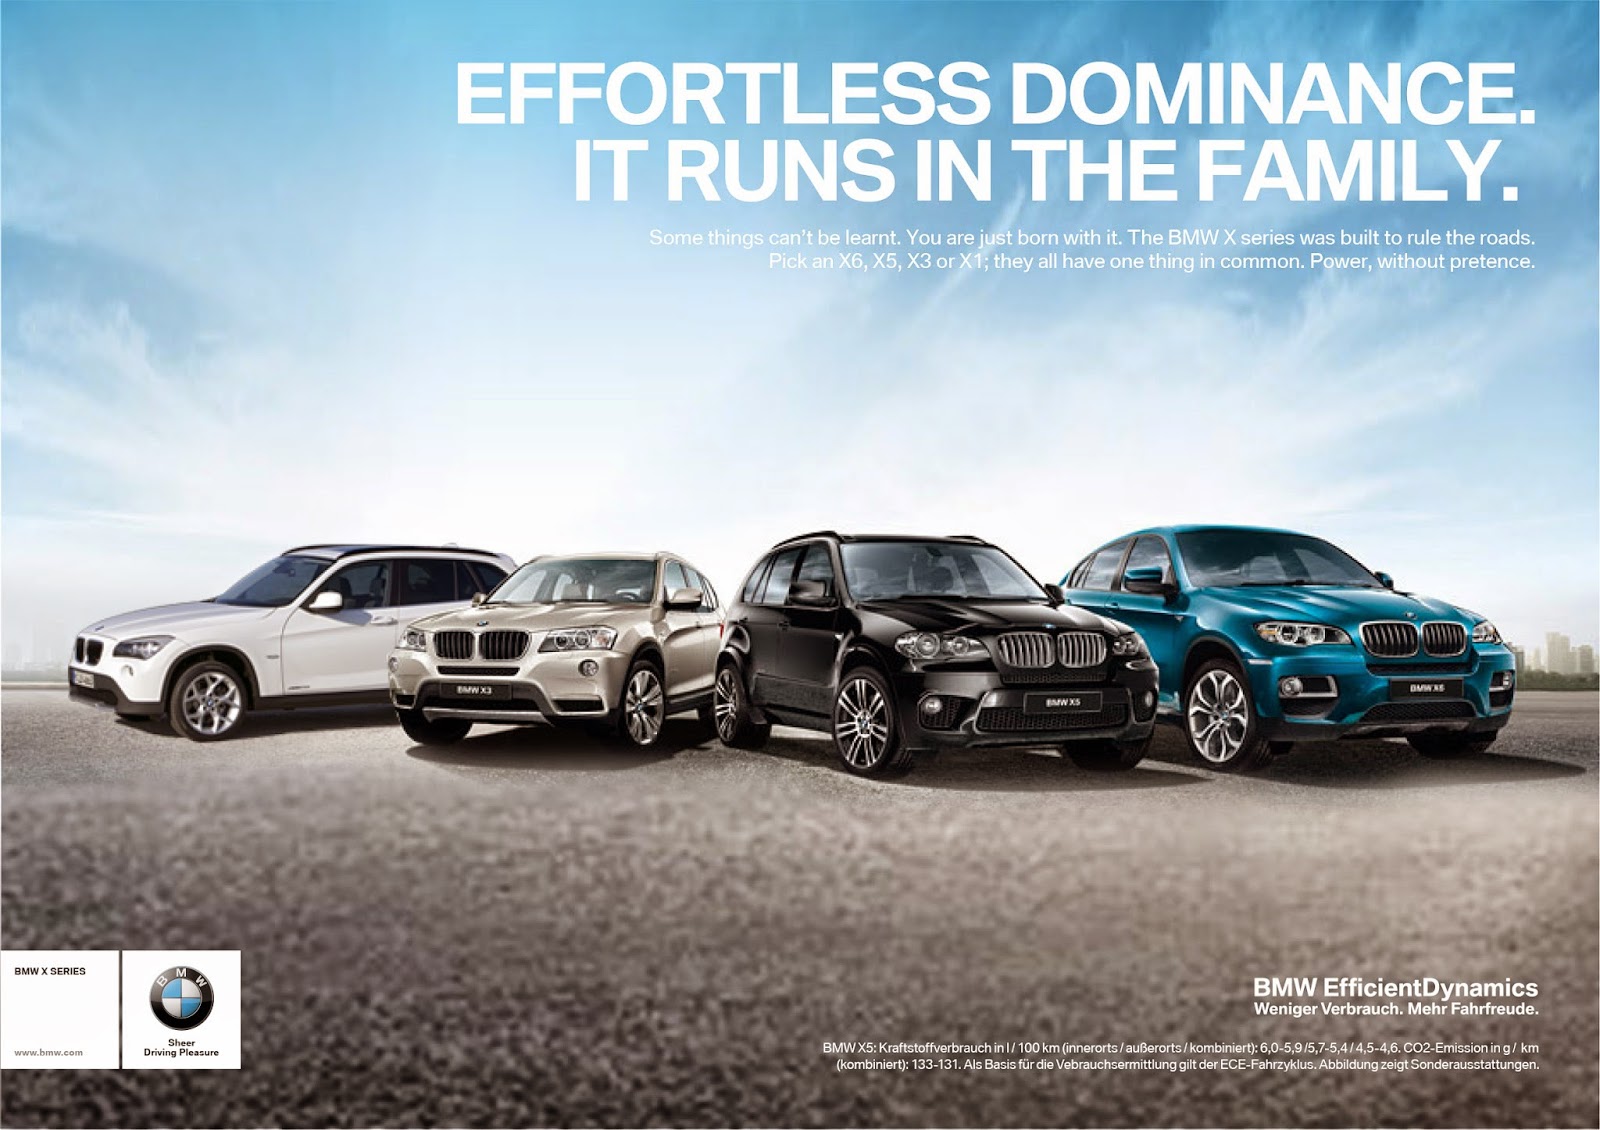 Идеальная реклама для BMW